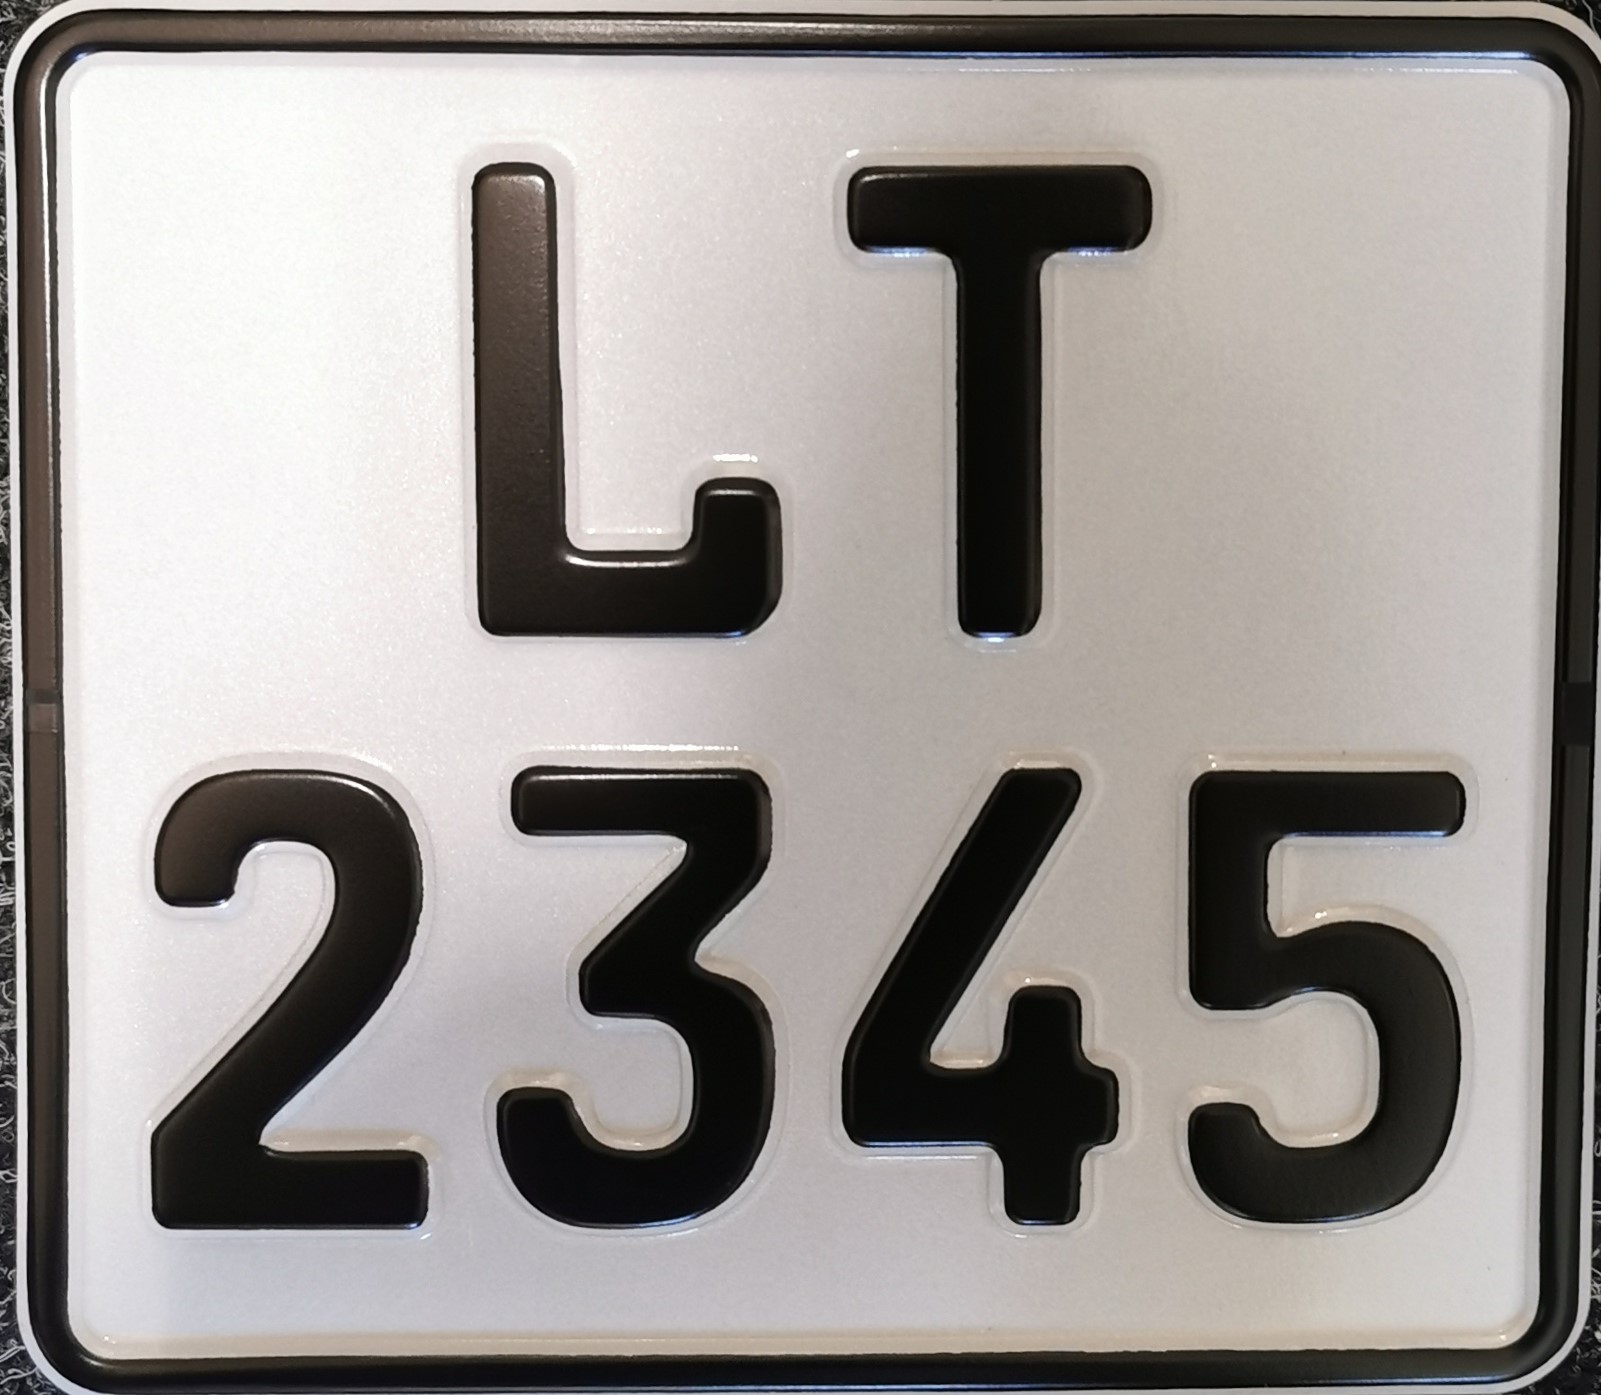 06a. Litauisches MC Schild ohne EU-Zeichen - 170 x 150 mm